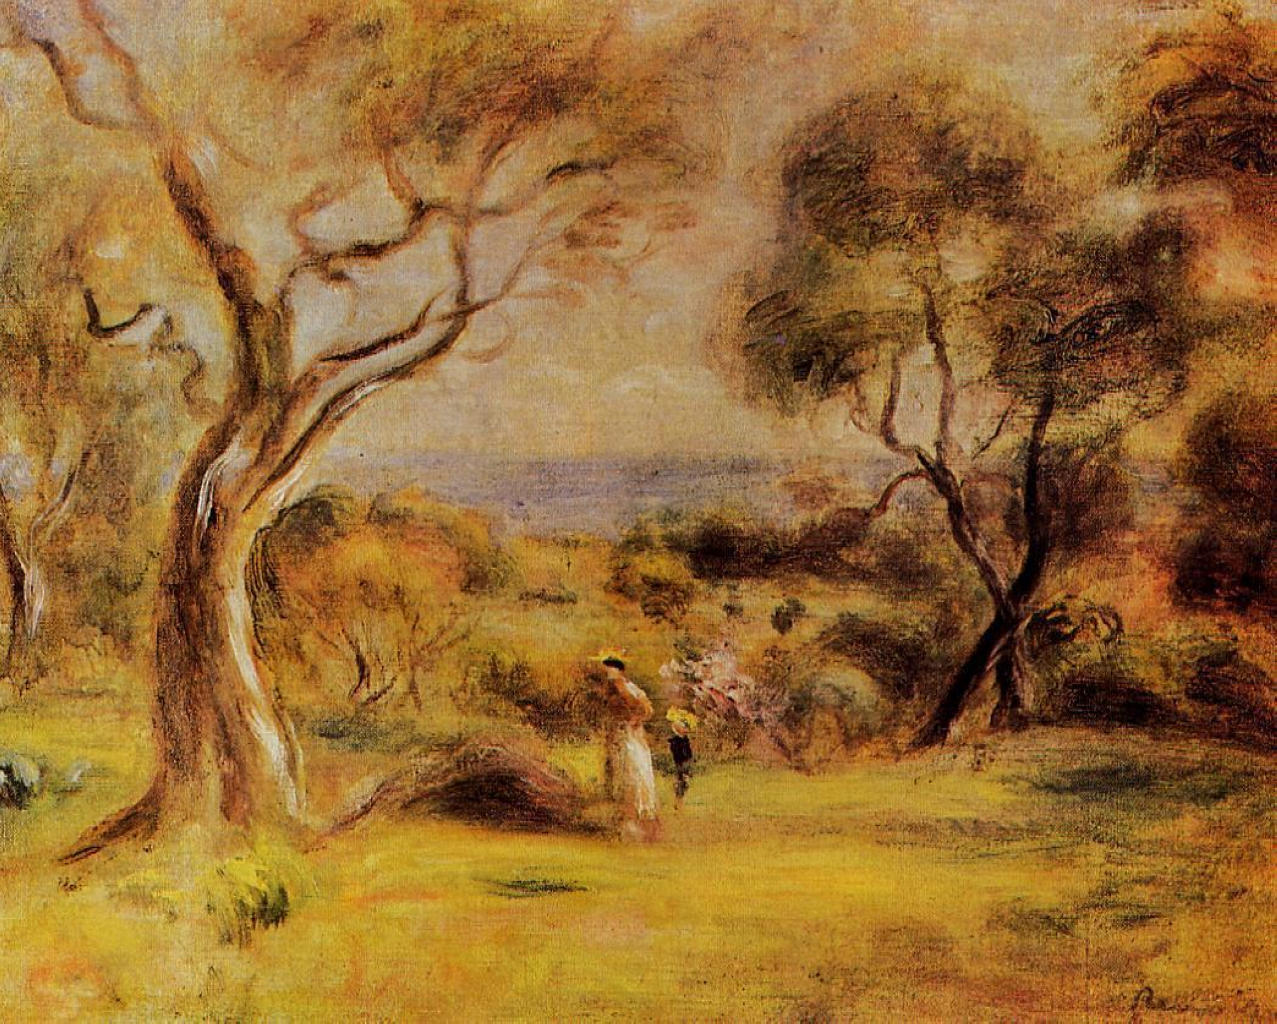 Pierre+Auguste+Renoir-1841-1-19 (411).jpg